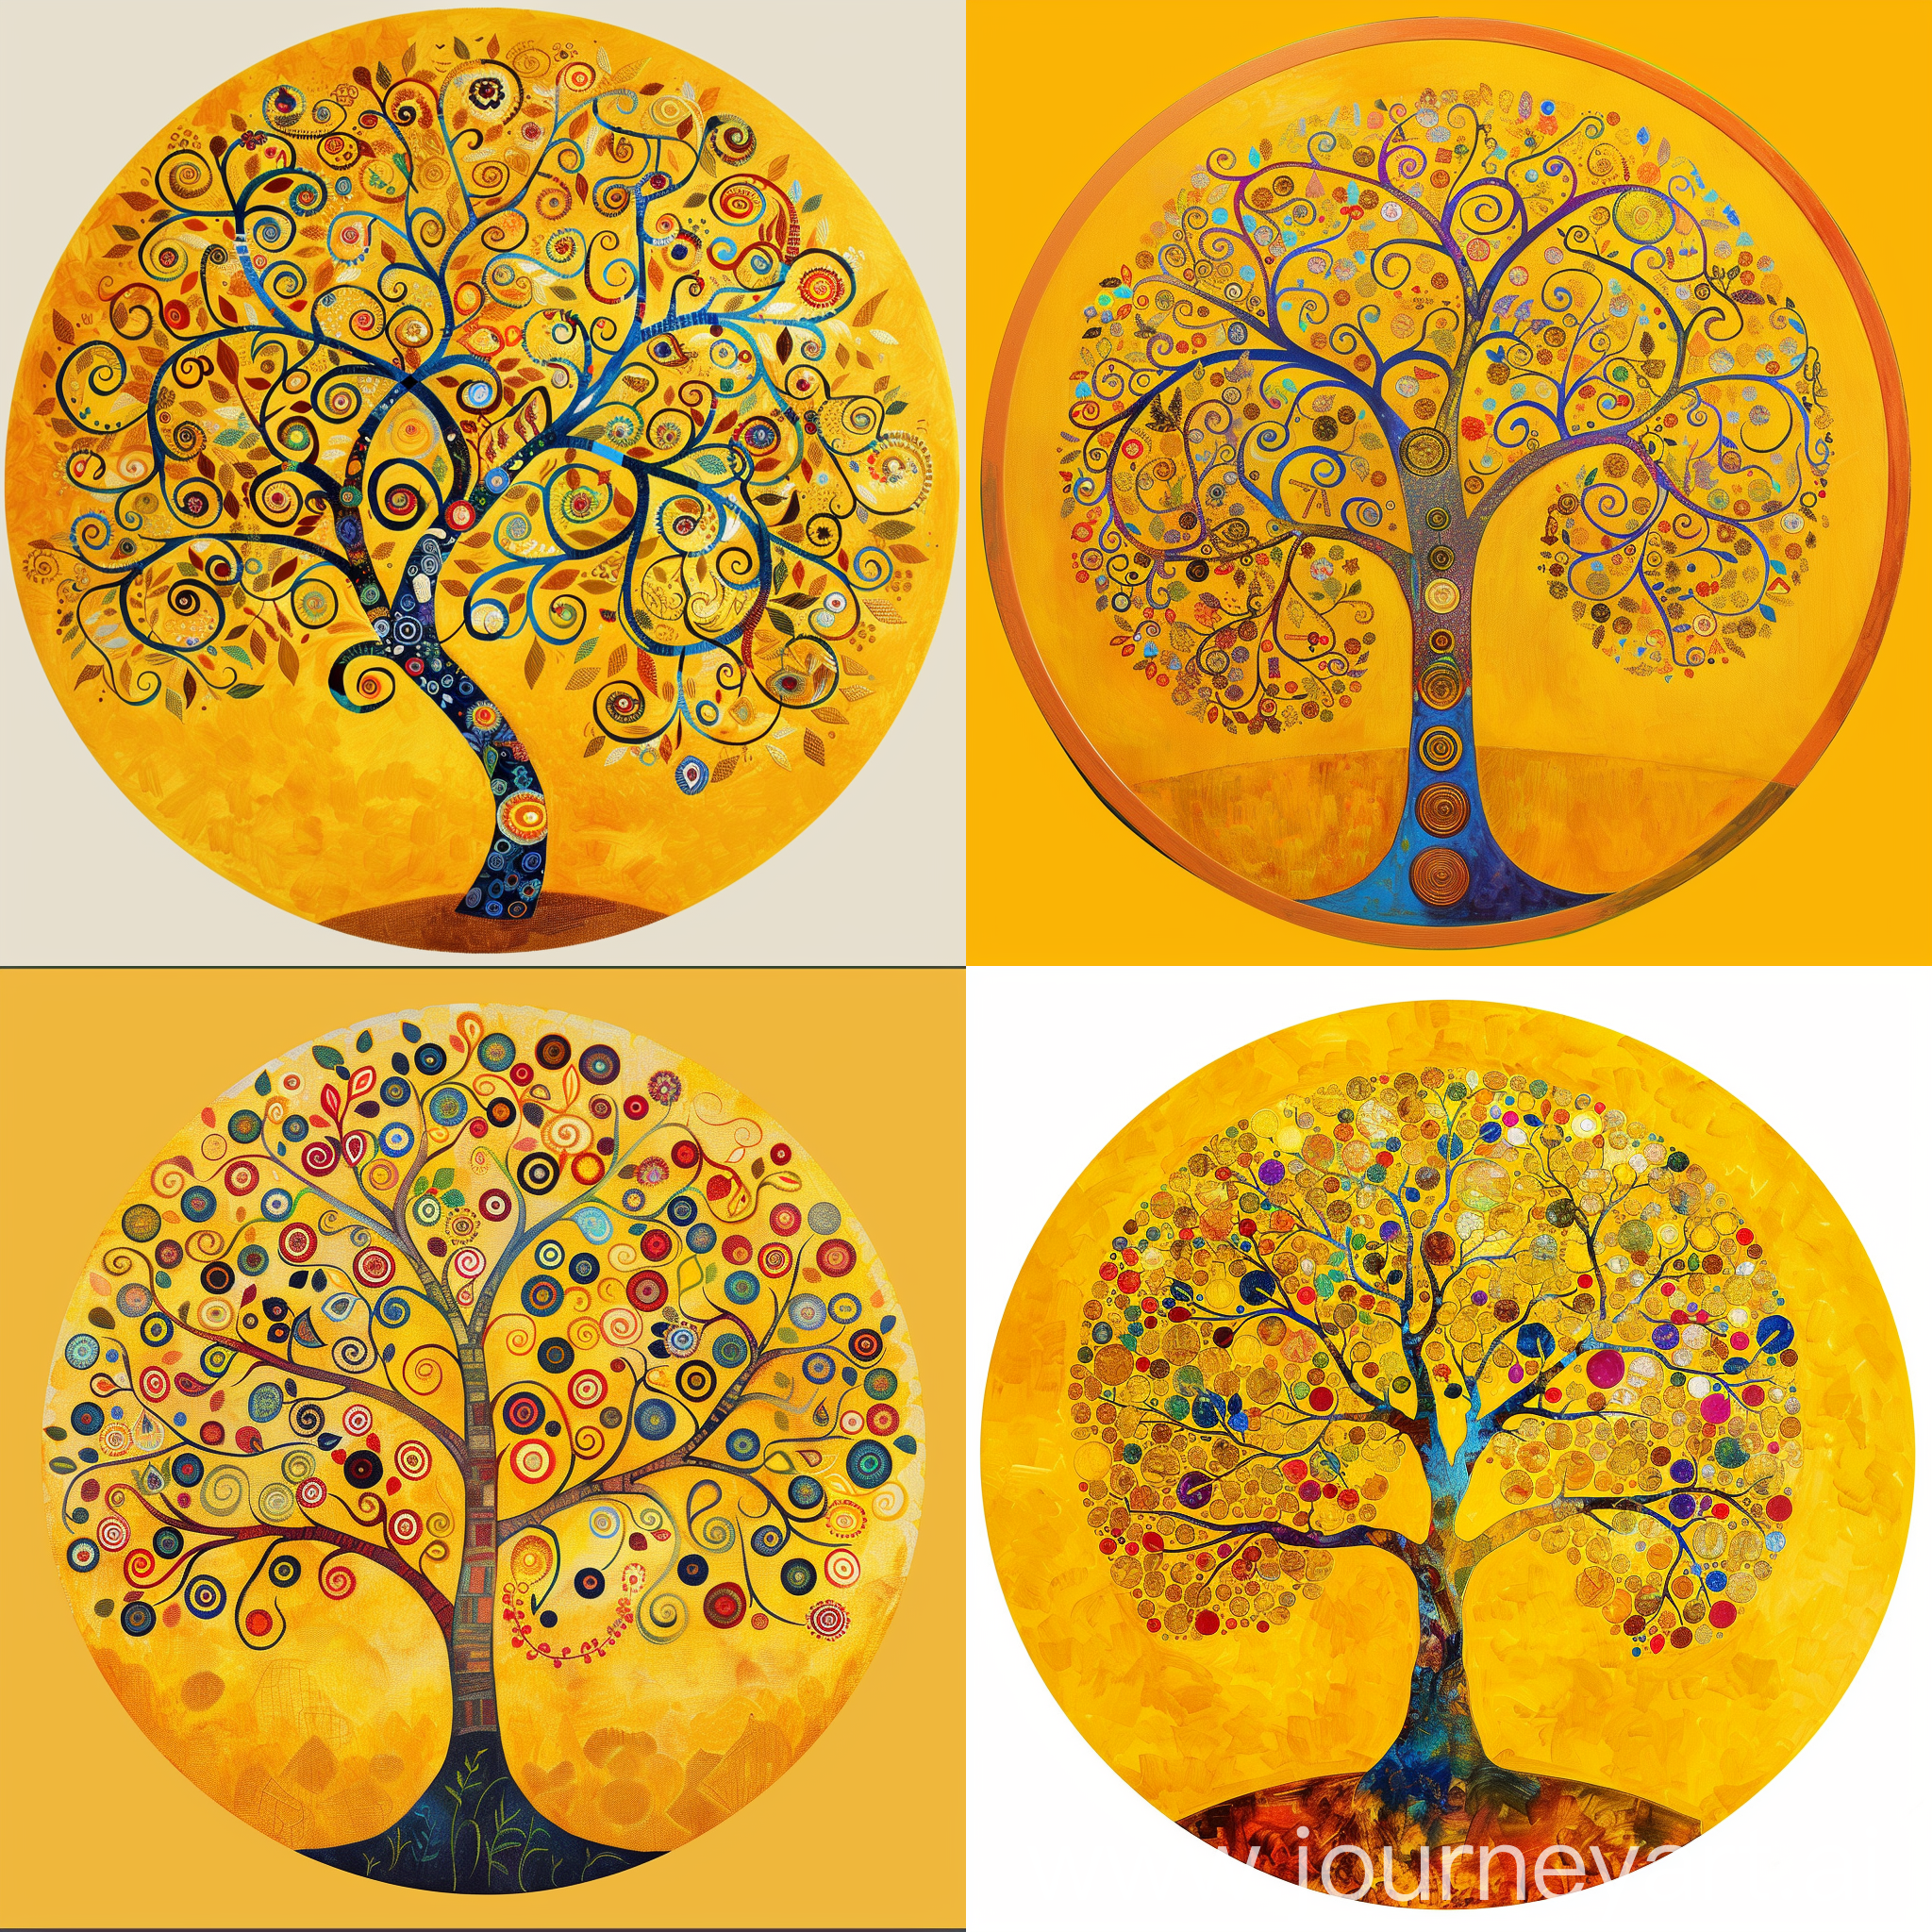 Цветное древо жизни в стиле Климта на жёлтом фоне в кругу 